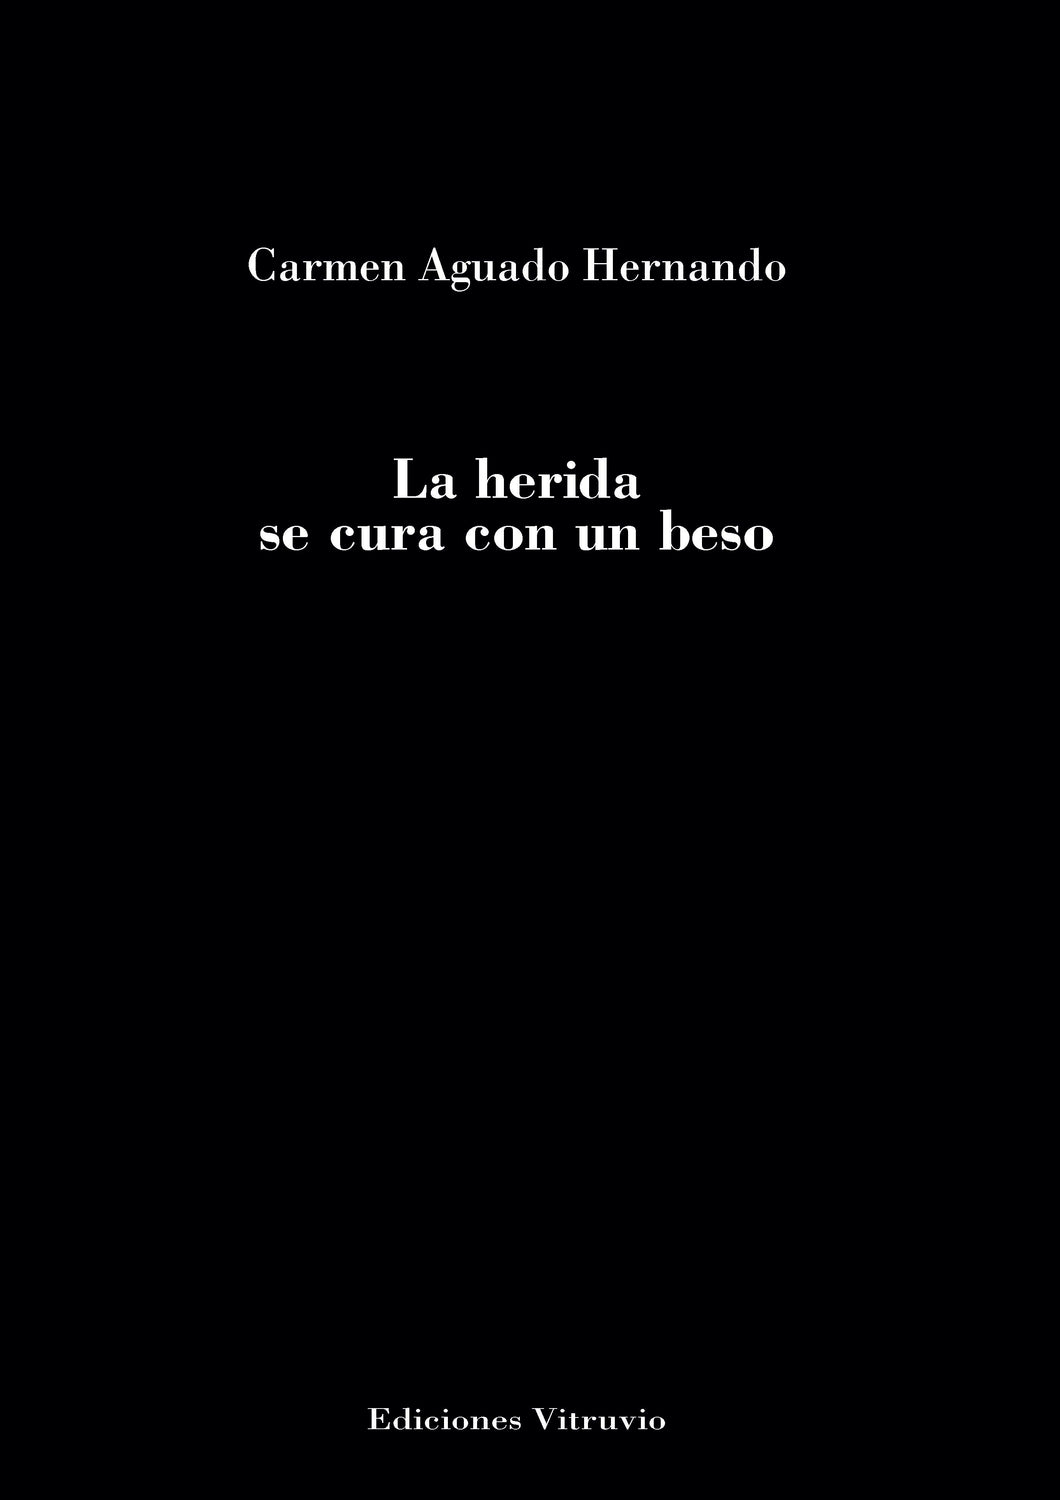 La herida se cura con un beso, de Carmen Aguado